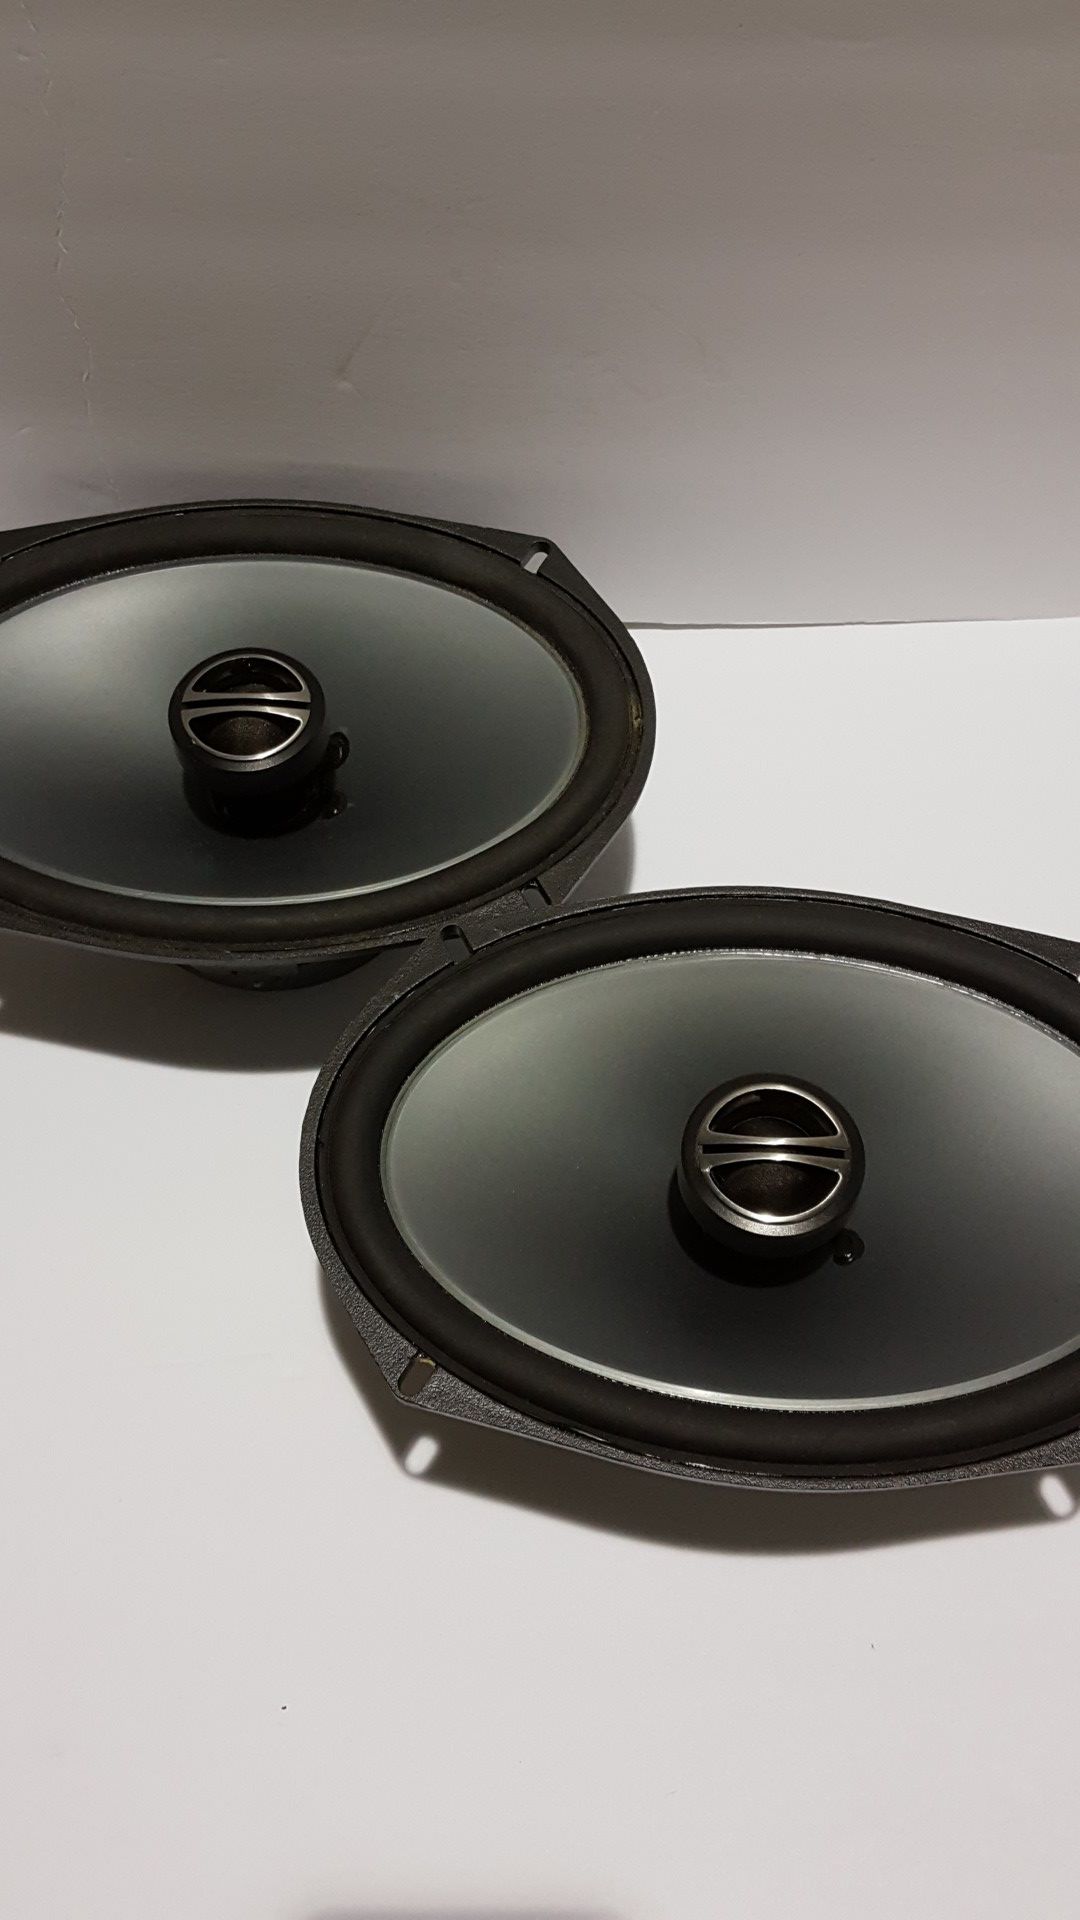 Alpine 6 x 9 in car speakers